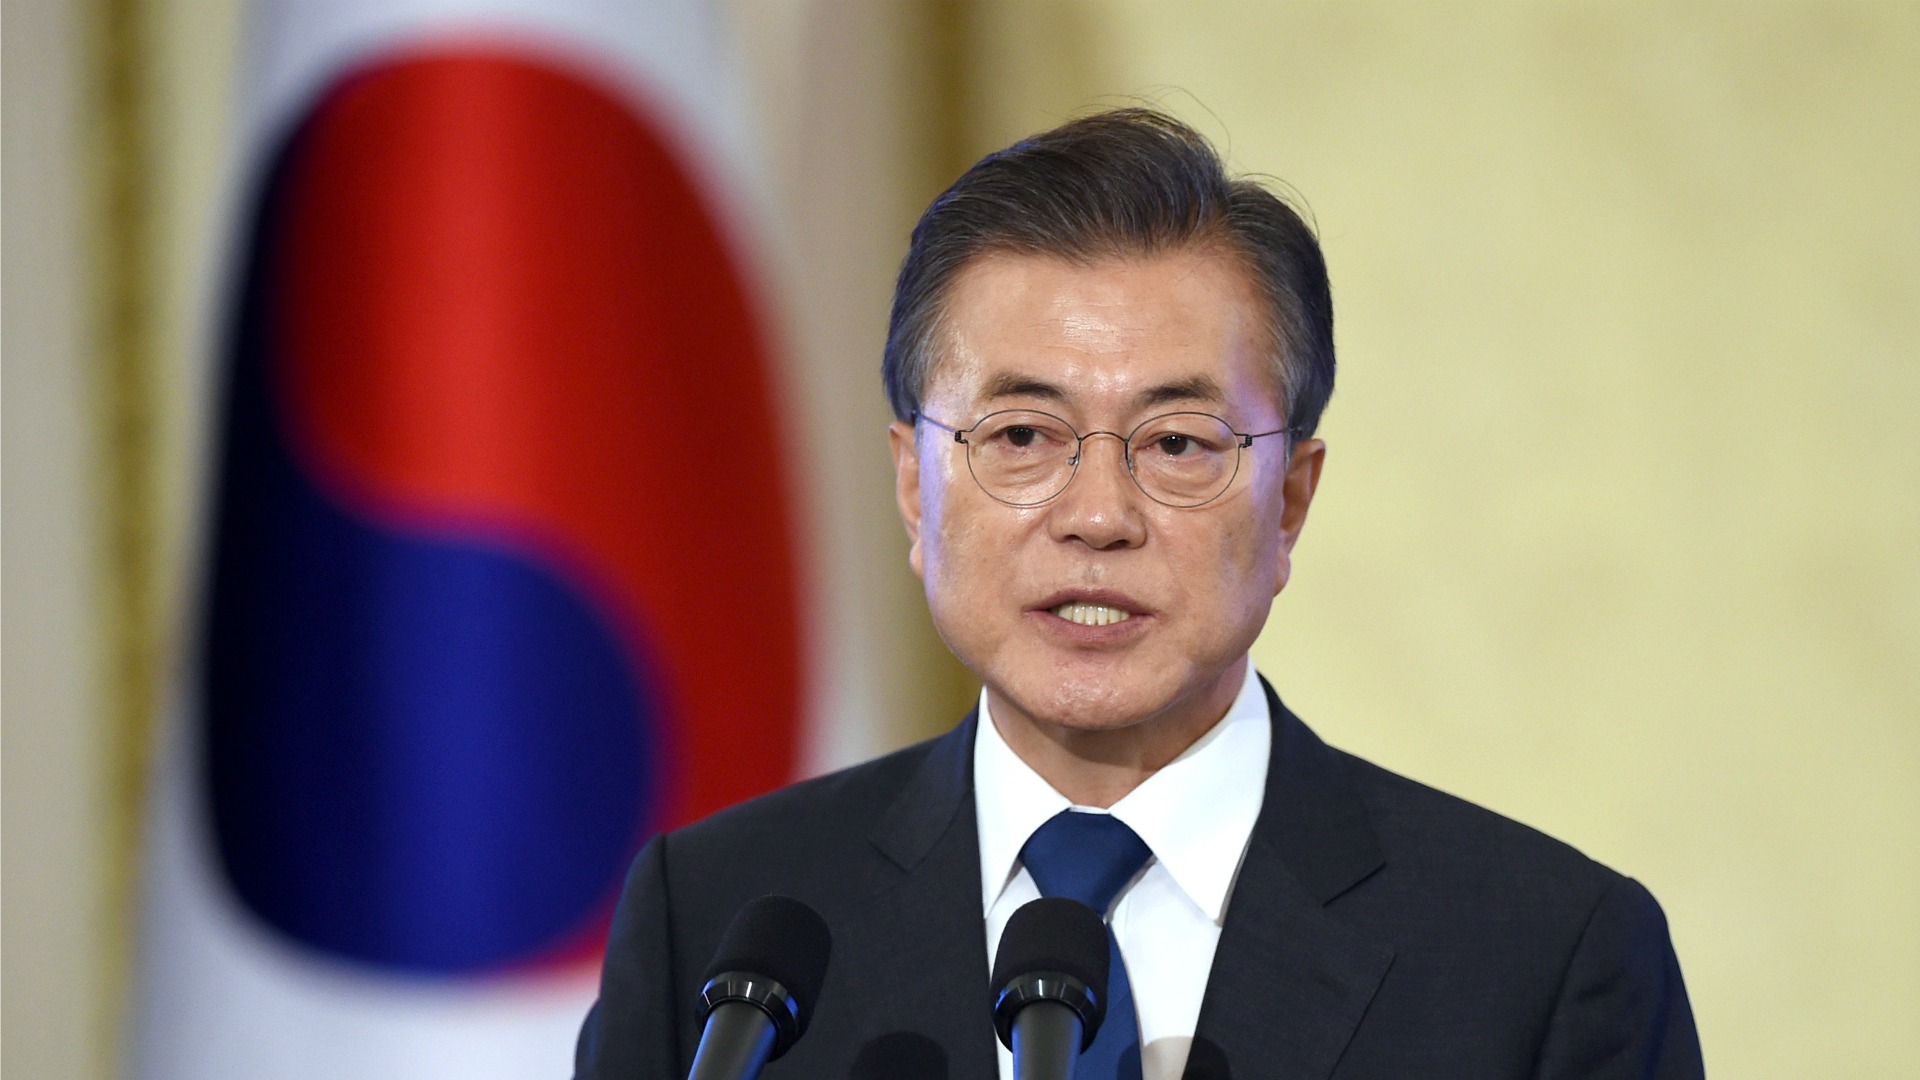 El presidente surcoreano asegura que no habrá guerra en Corea "nunca más"